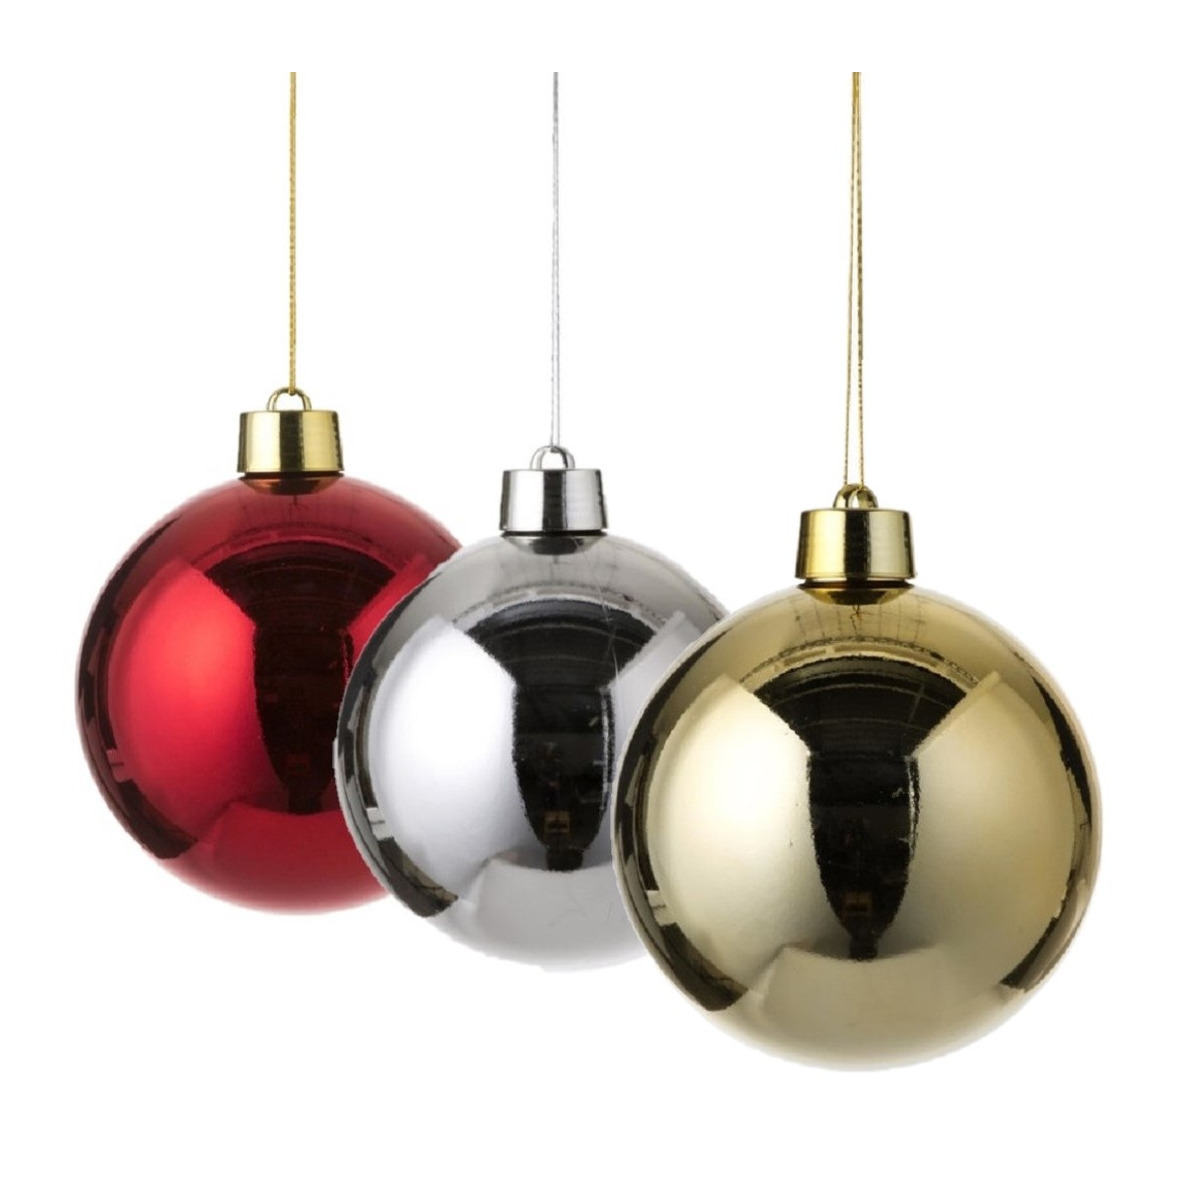 Kerstversieringen set van 3x grote kunststof kerstballen goud rood en zilver 20 cm glans